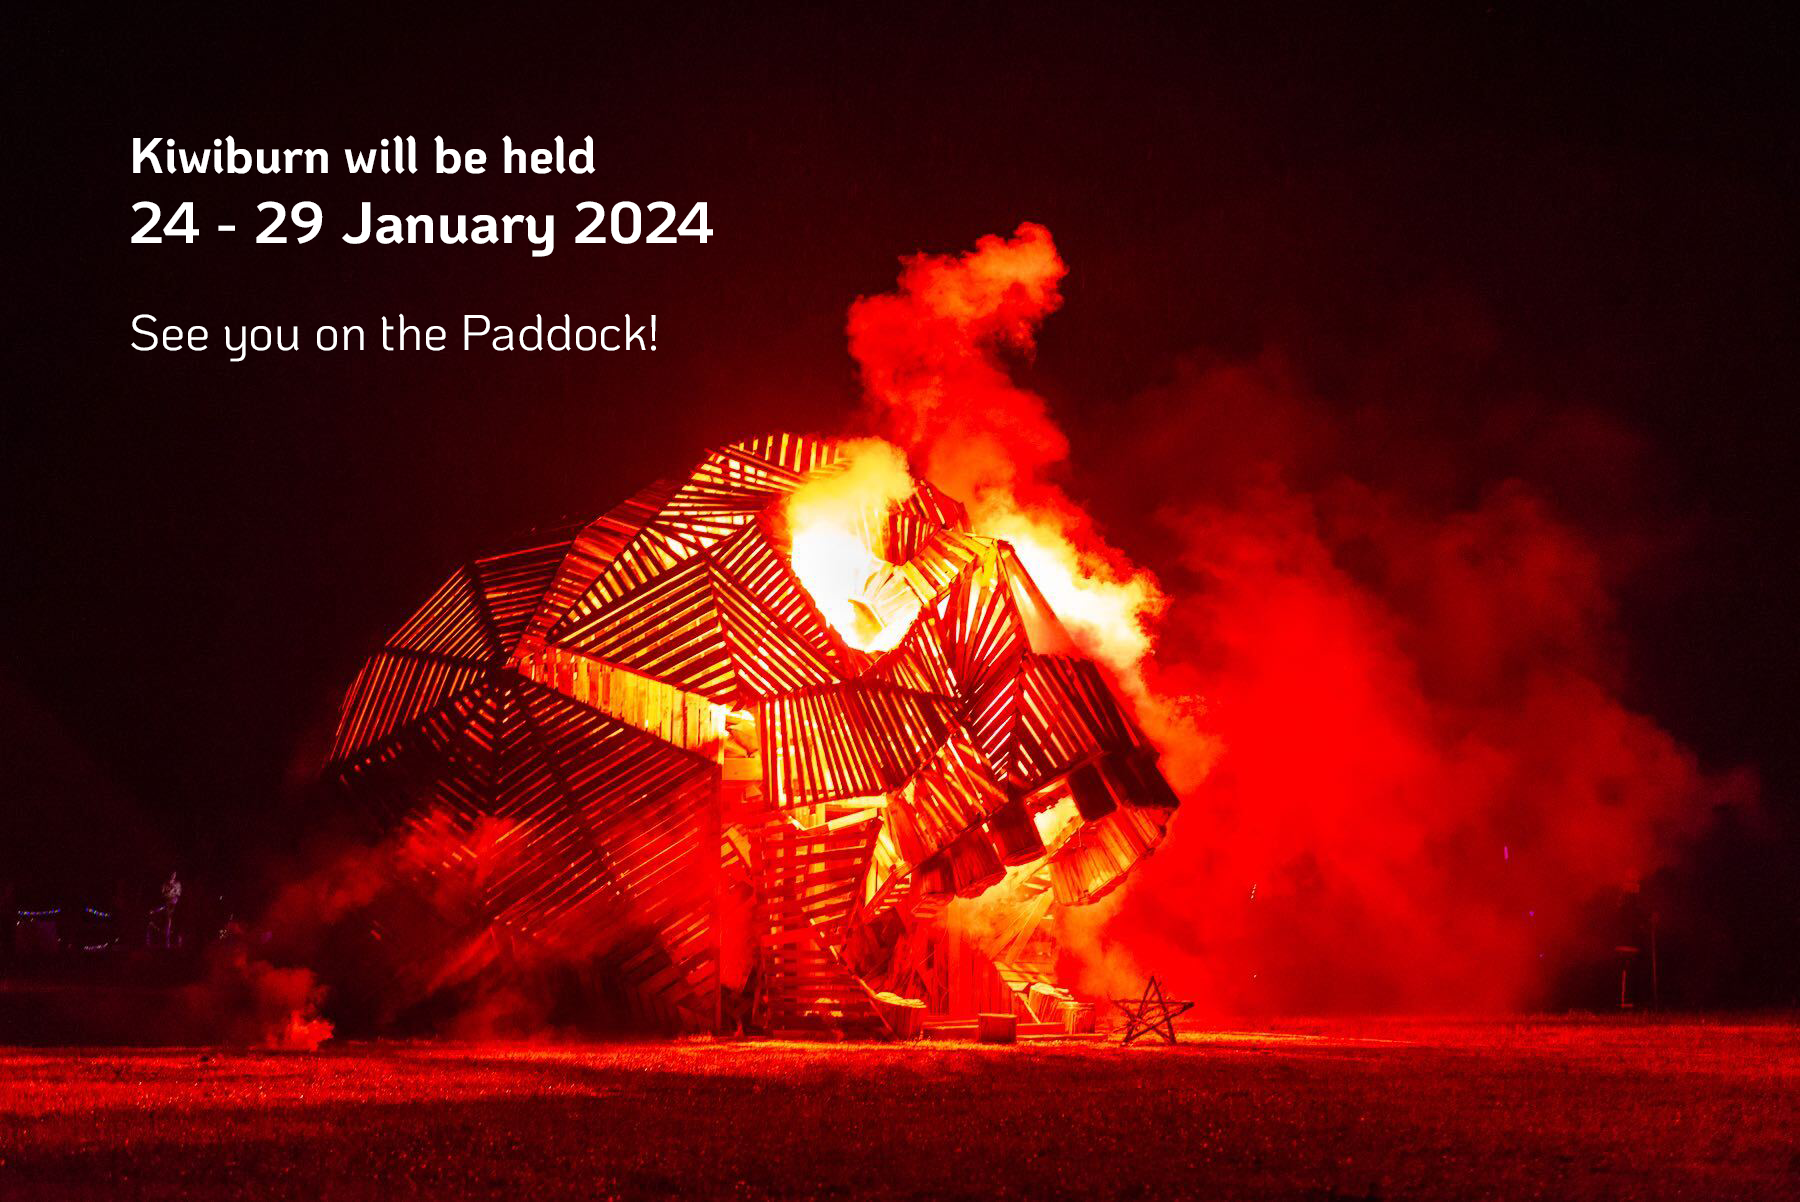 Kiwiburn will be held 24 - 29 January 2024